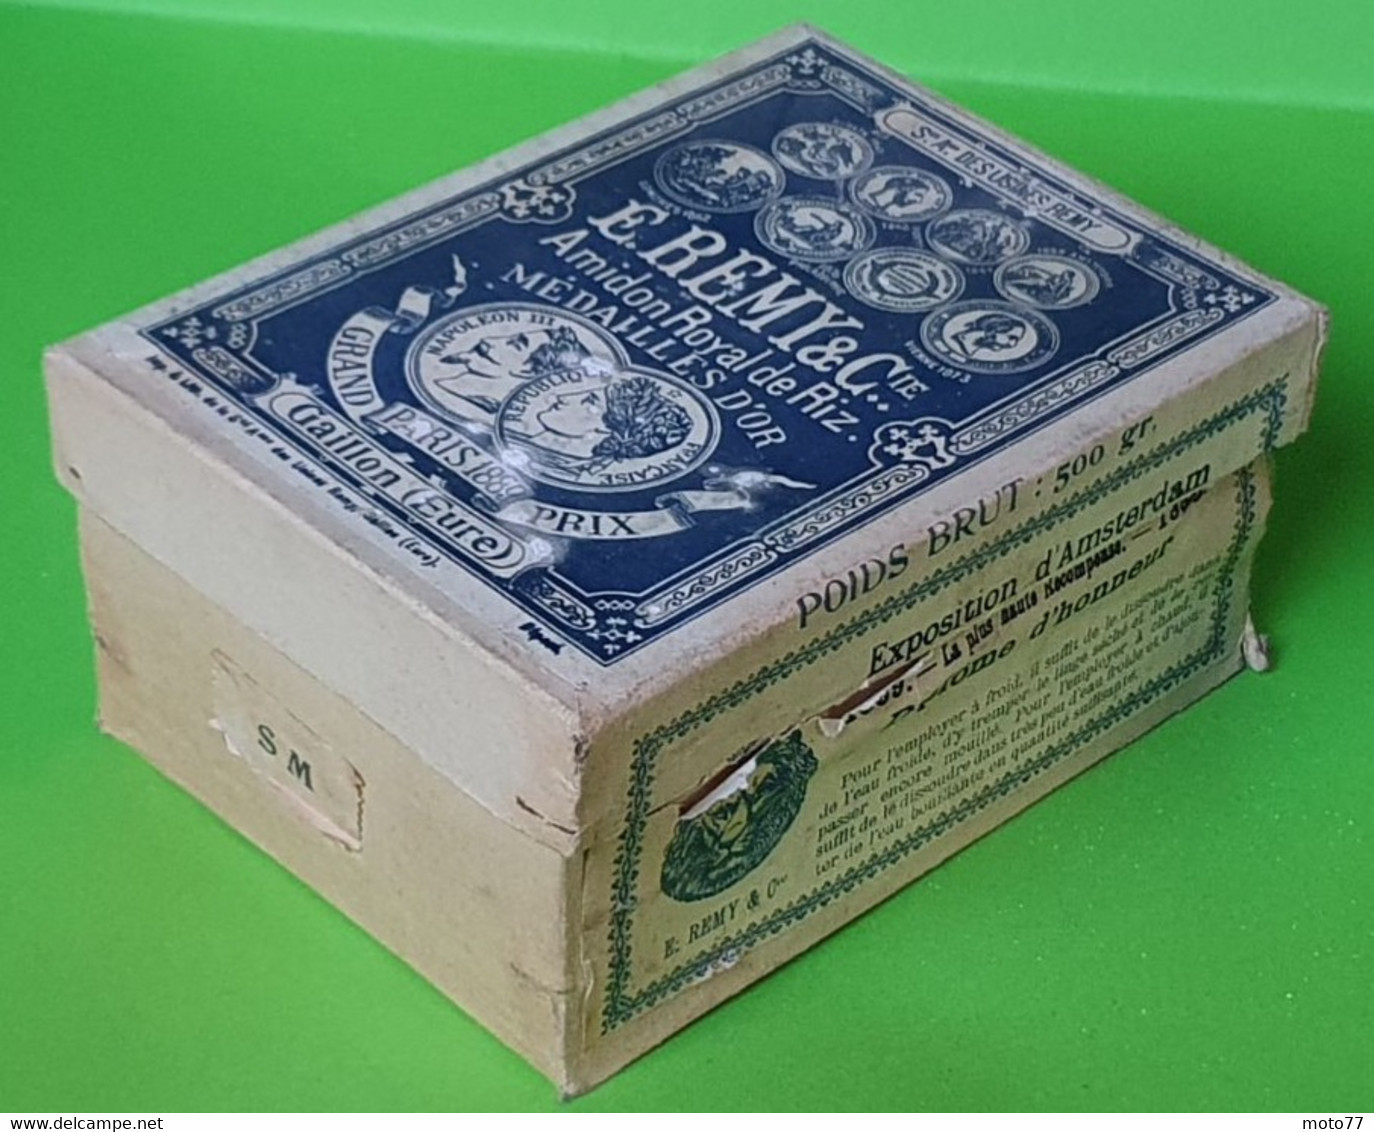 Ancienne BOITE Carton Pleine N2- Publicité AMIDON REMY - Tête De Lion - Prix Exposition Paris 1867 1878 1889 - Vers 1900 - Dosen